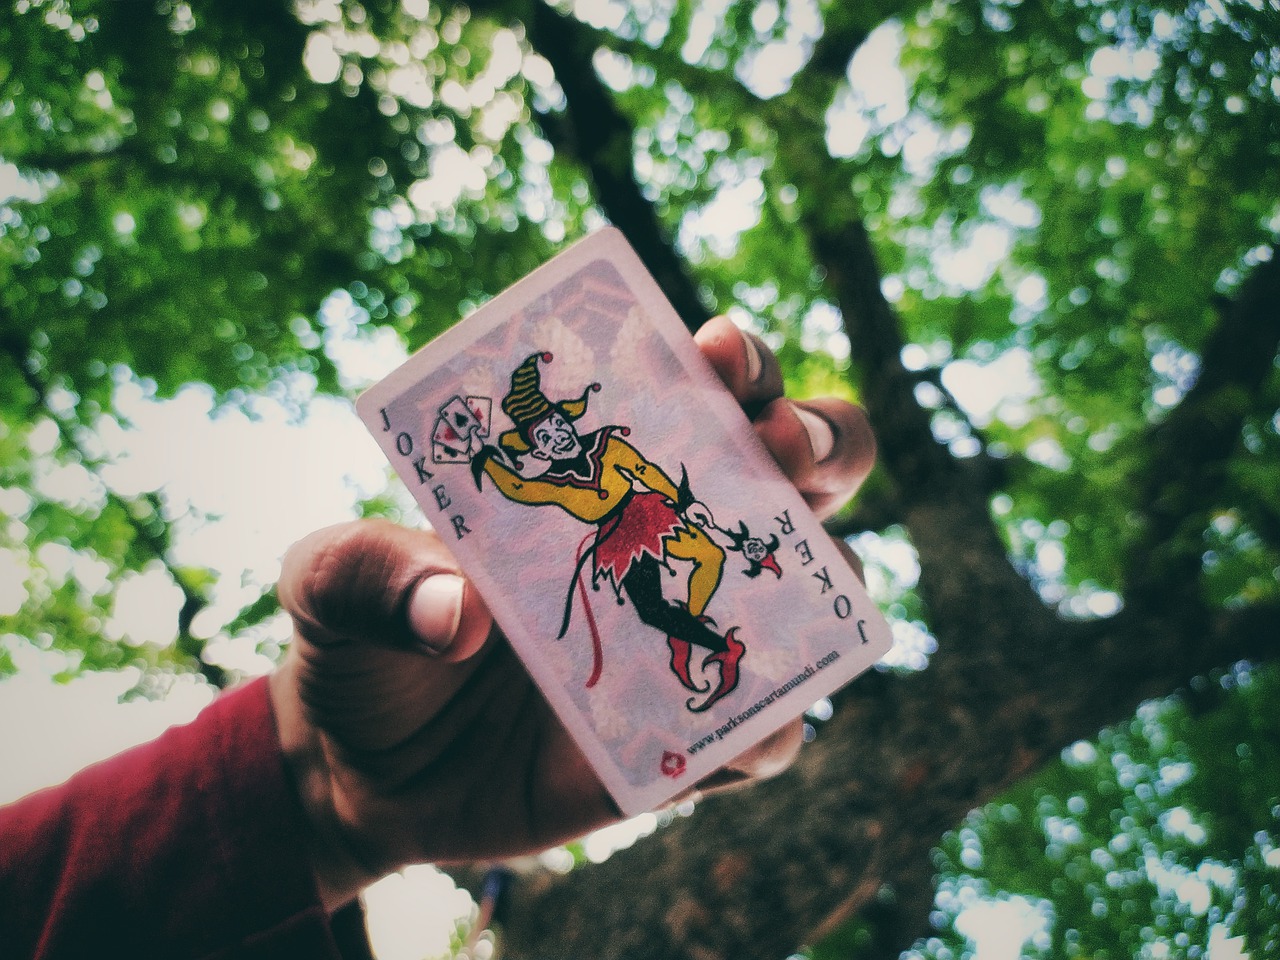 Joker Card Game Playing Card Trees - FredHan / Pixabay